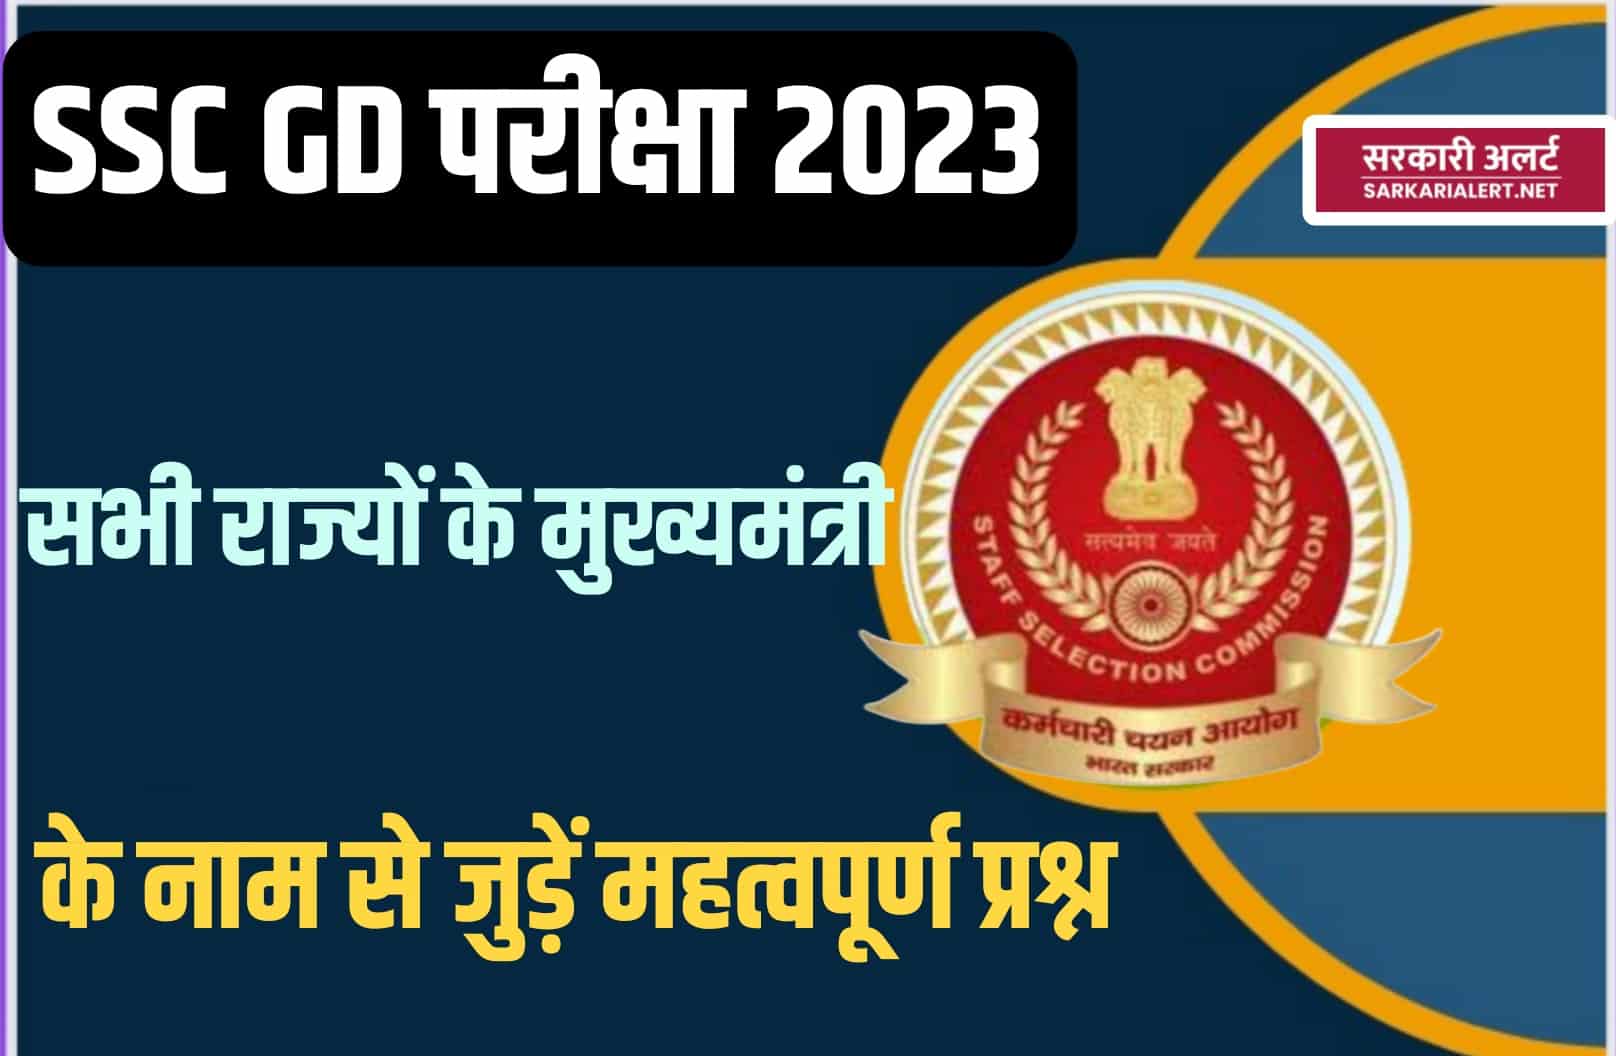 SSC GD Exam 2023 Name of the Chief Minister of the States | सभी राज्यों के मुख्यमंत्री के नाम से जुड़ें मुख्य प्रश्न